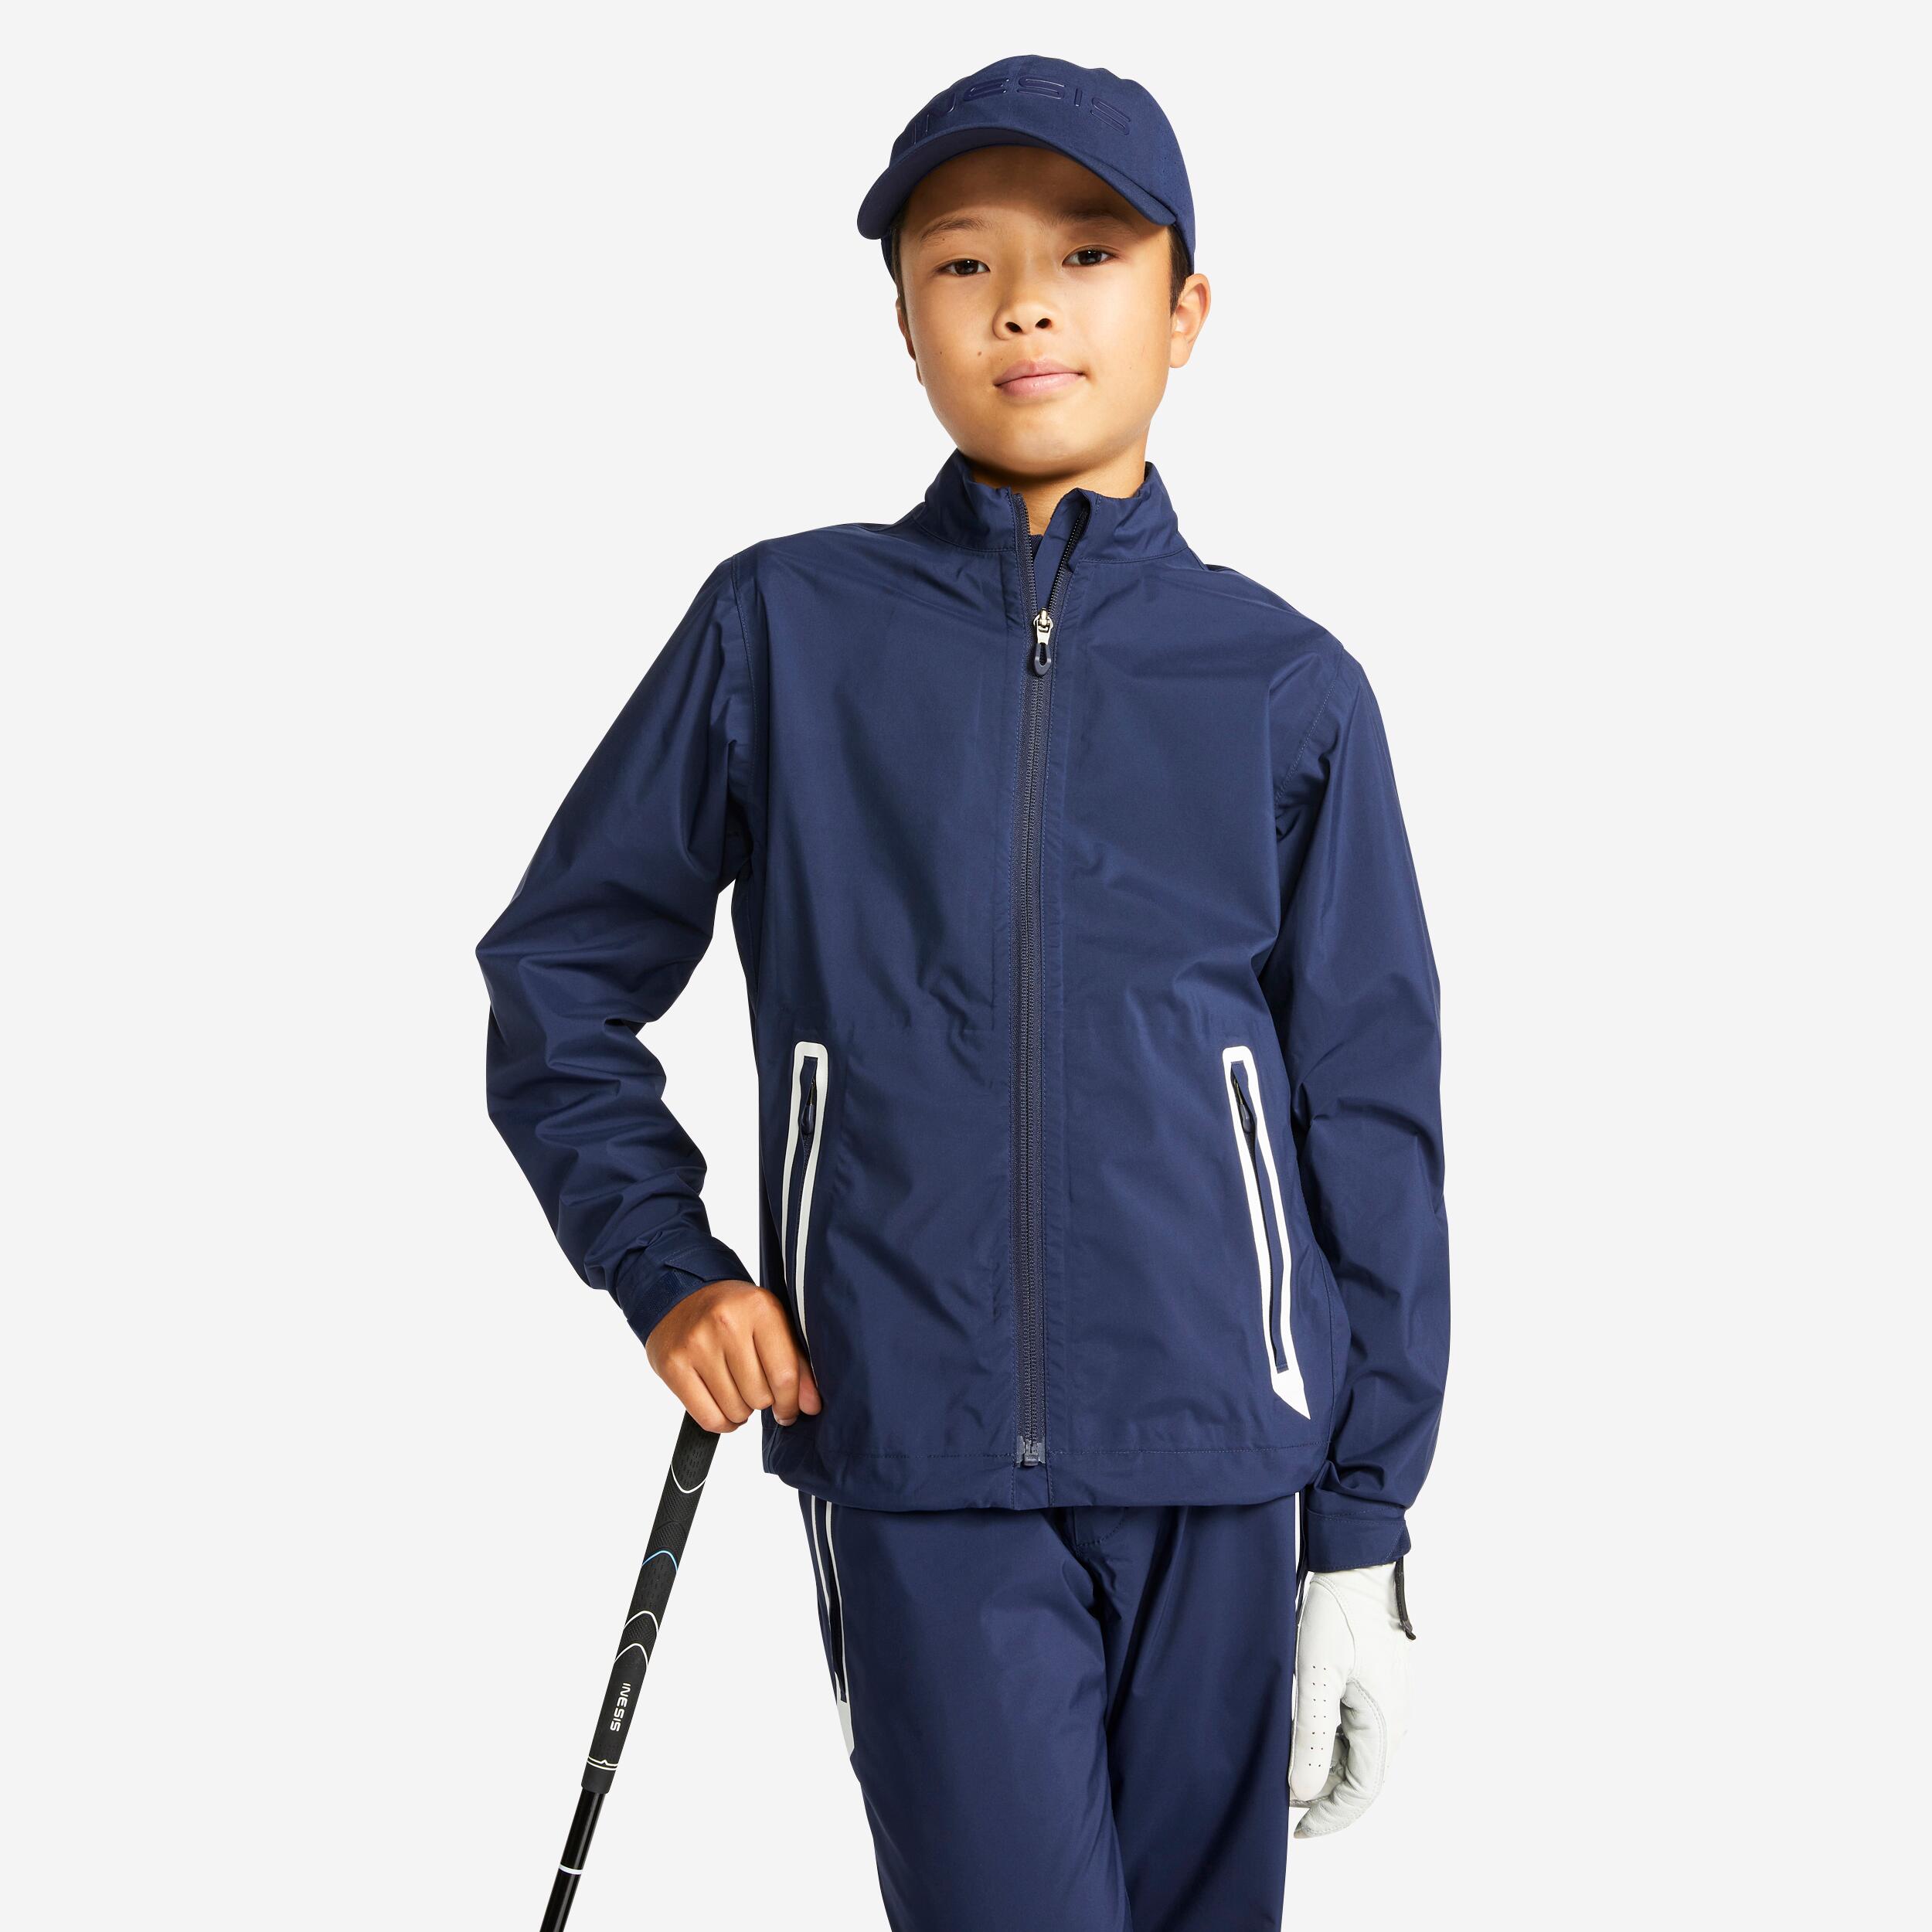 INESIS Kids golf waterproof rain jacket RW500 navy blue